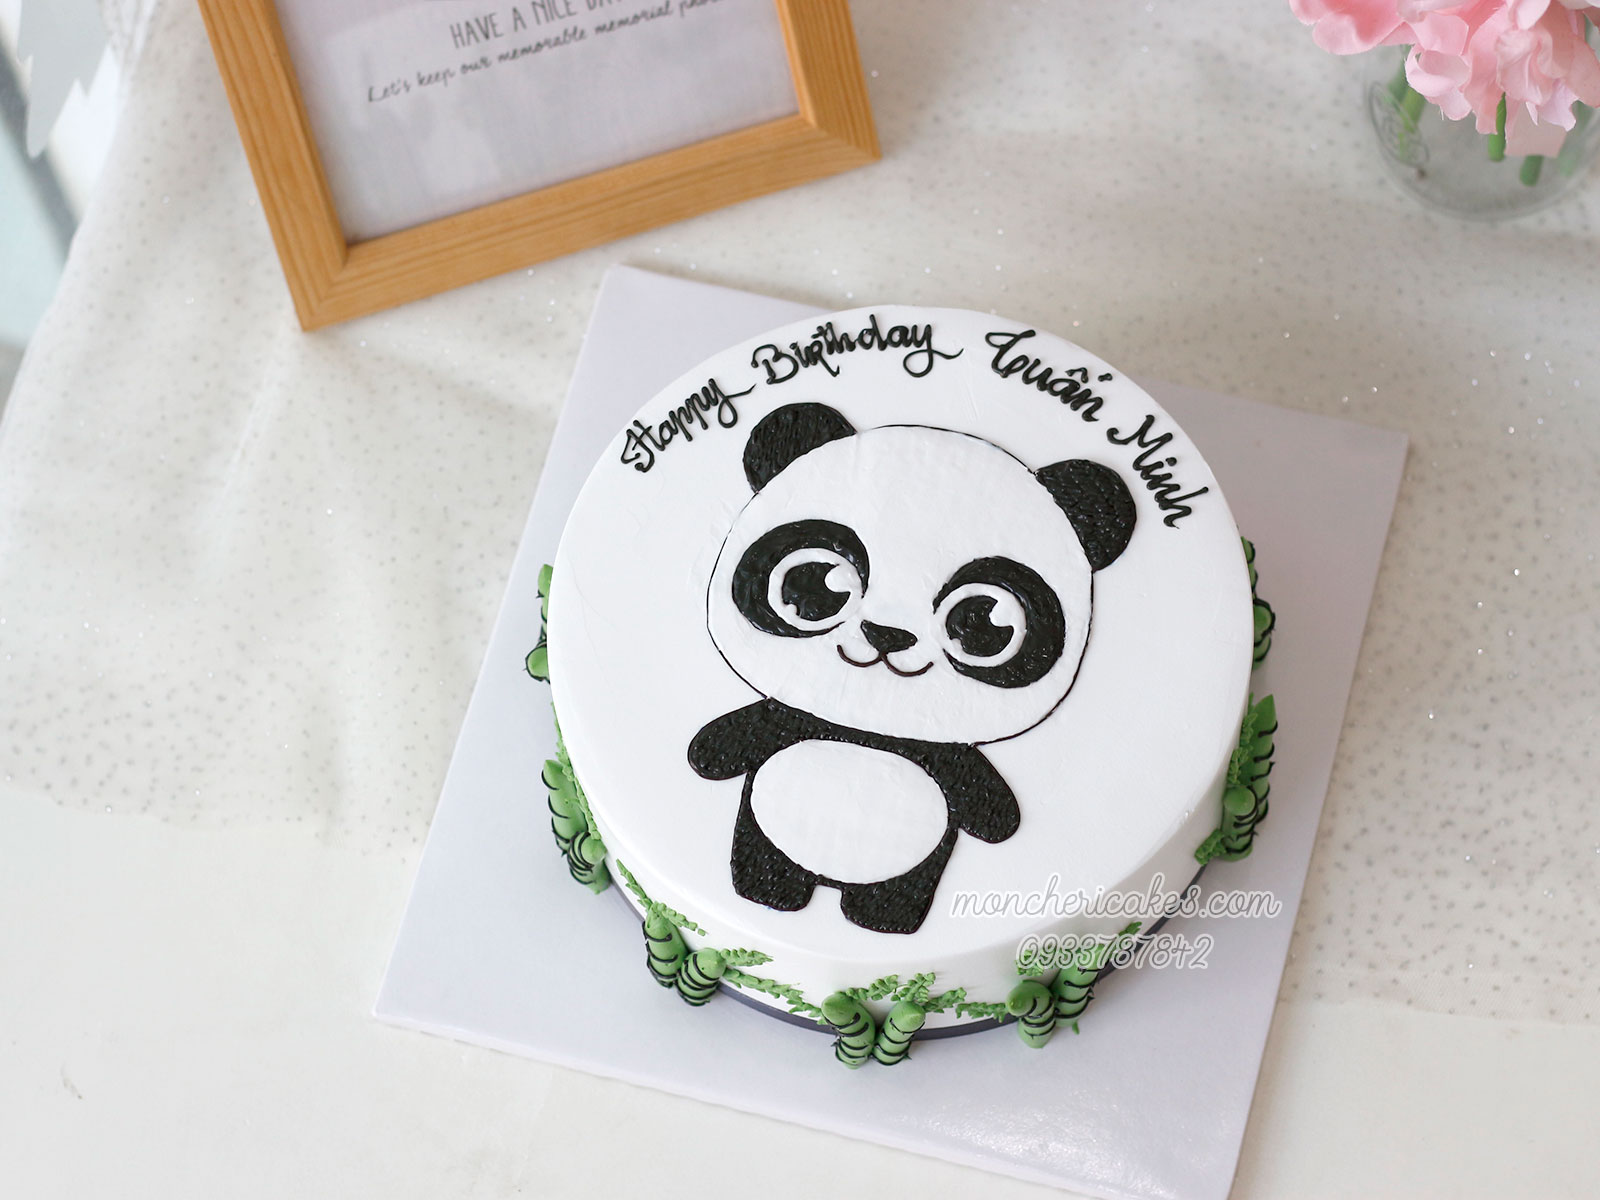 Bánh kem vẽ hình Gấu trúc Panda - Tiệm Bánh Mon Chéri | Bánh kem dễ thương